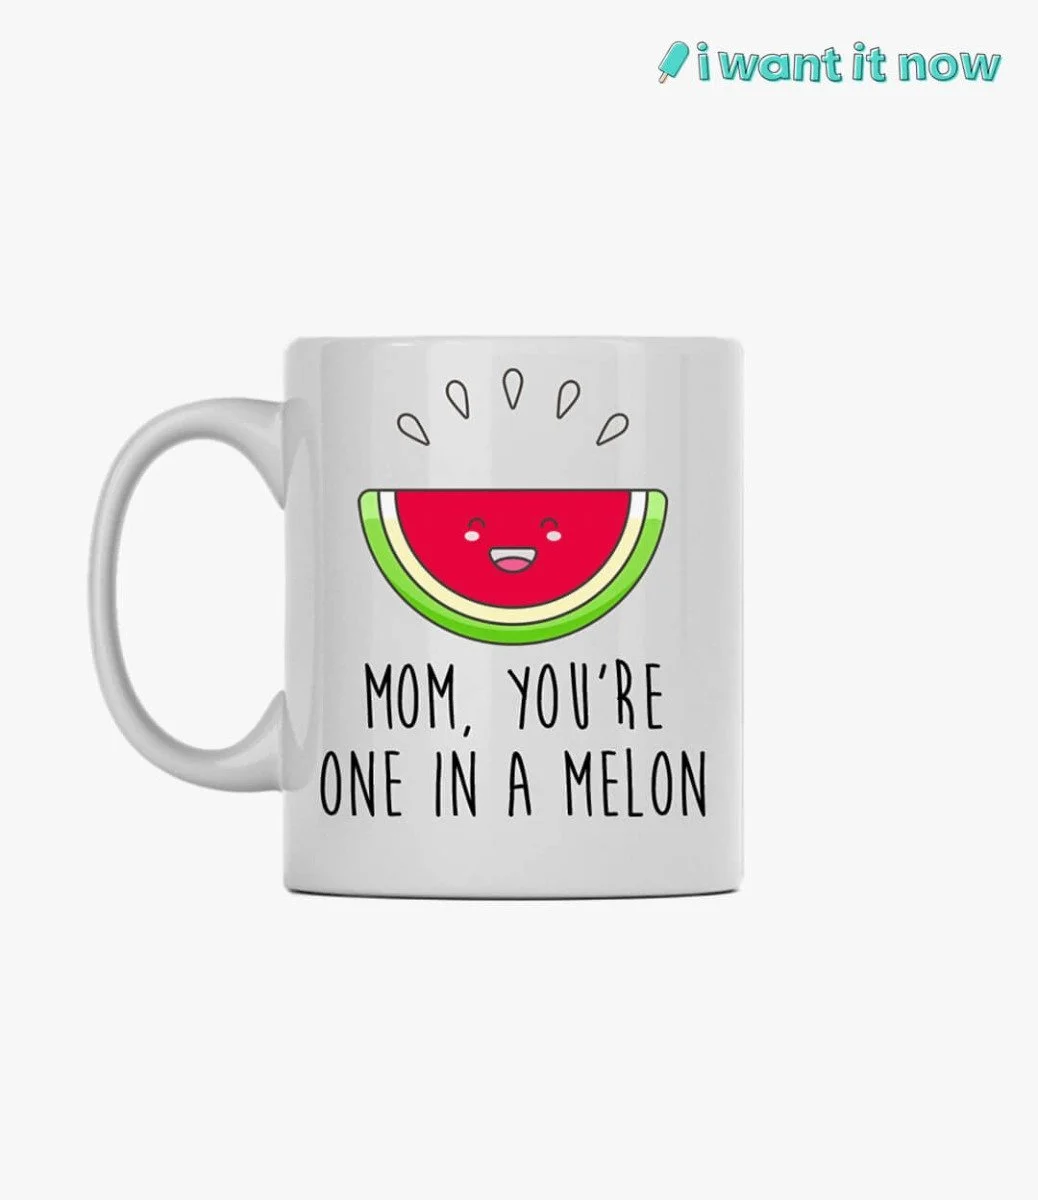 Mom, you're one in a melon Mug By I Want It Now